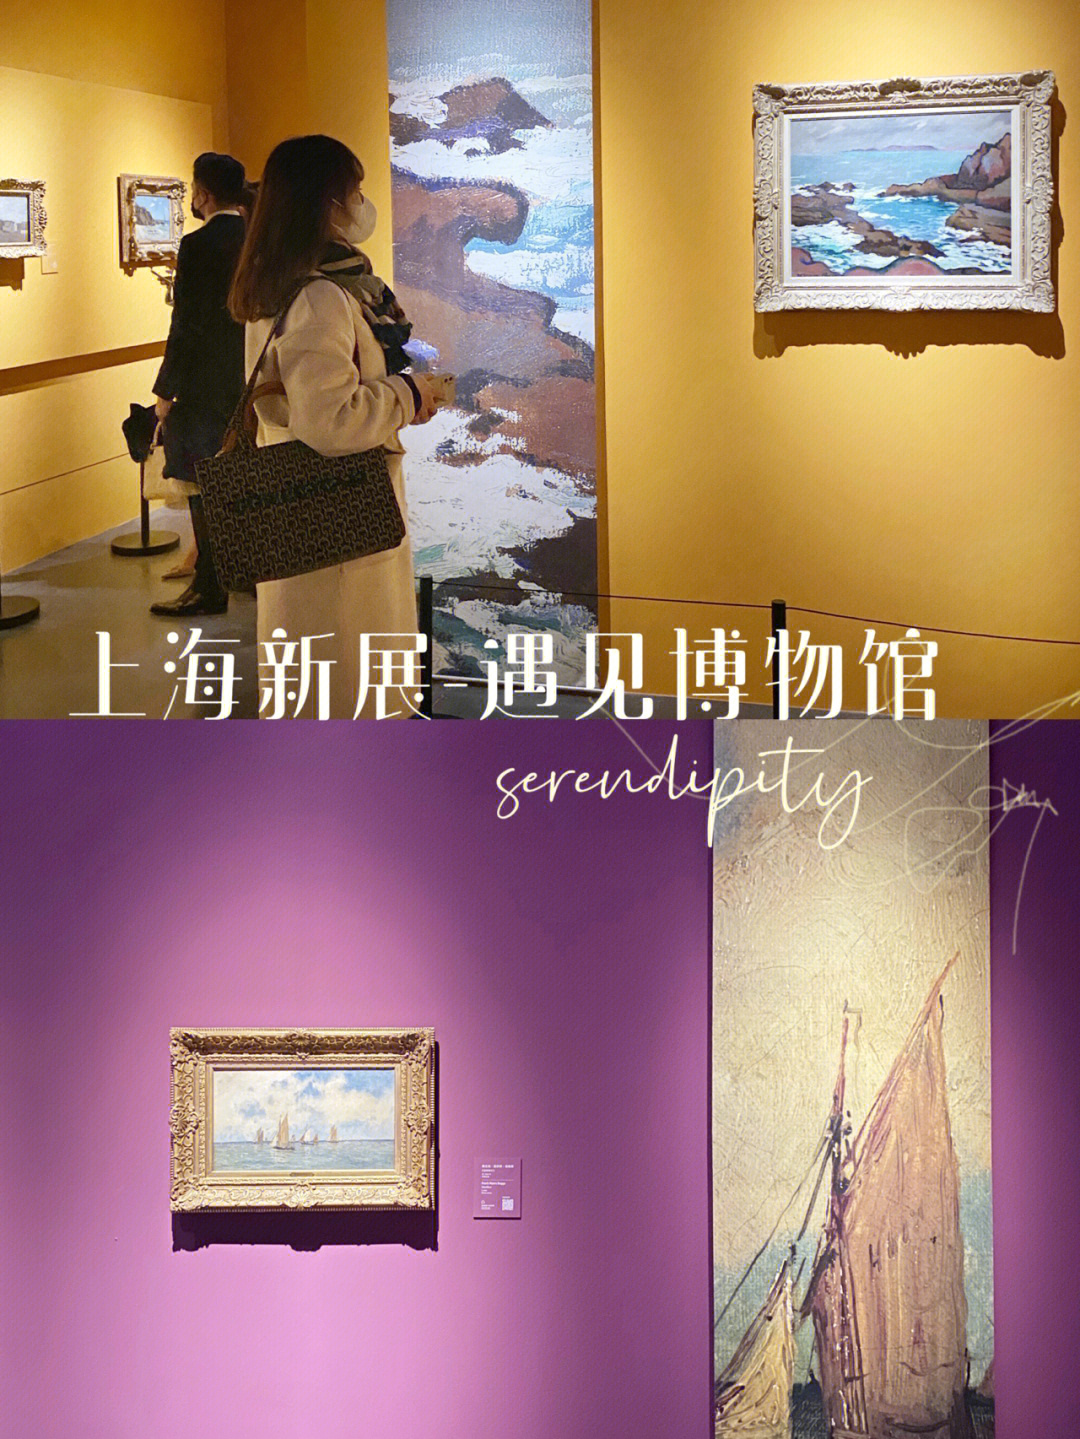 上海印象派画展图片